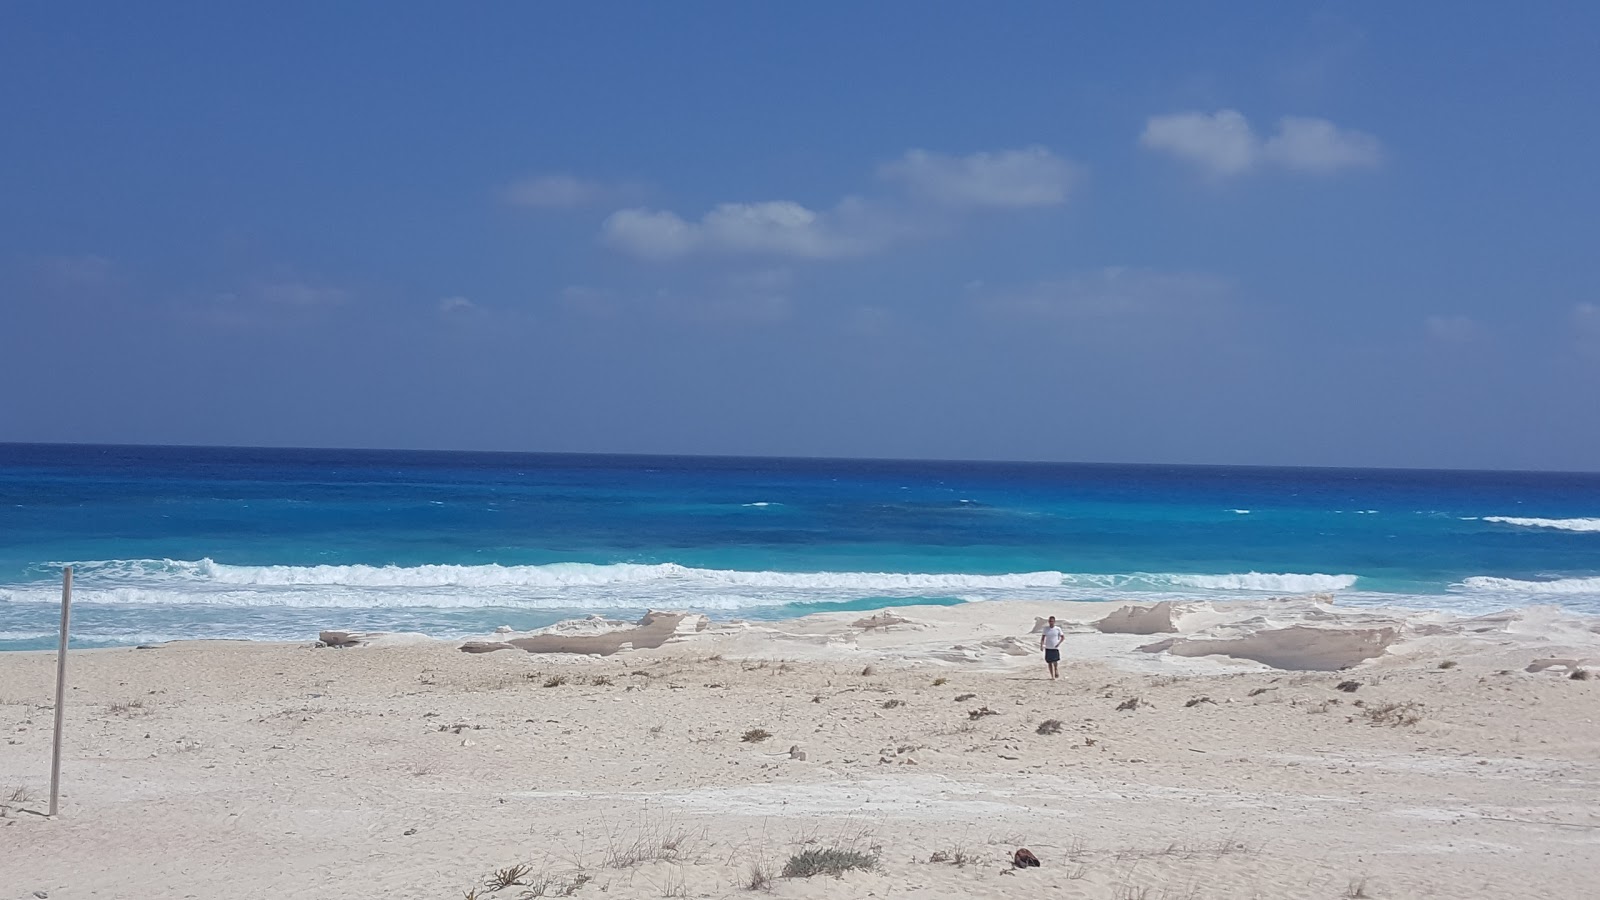 Umm al-Rakhm Beach'in fotoğrafı geniş plaj ile birlikte